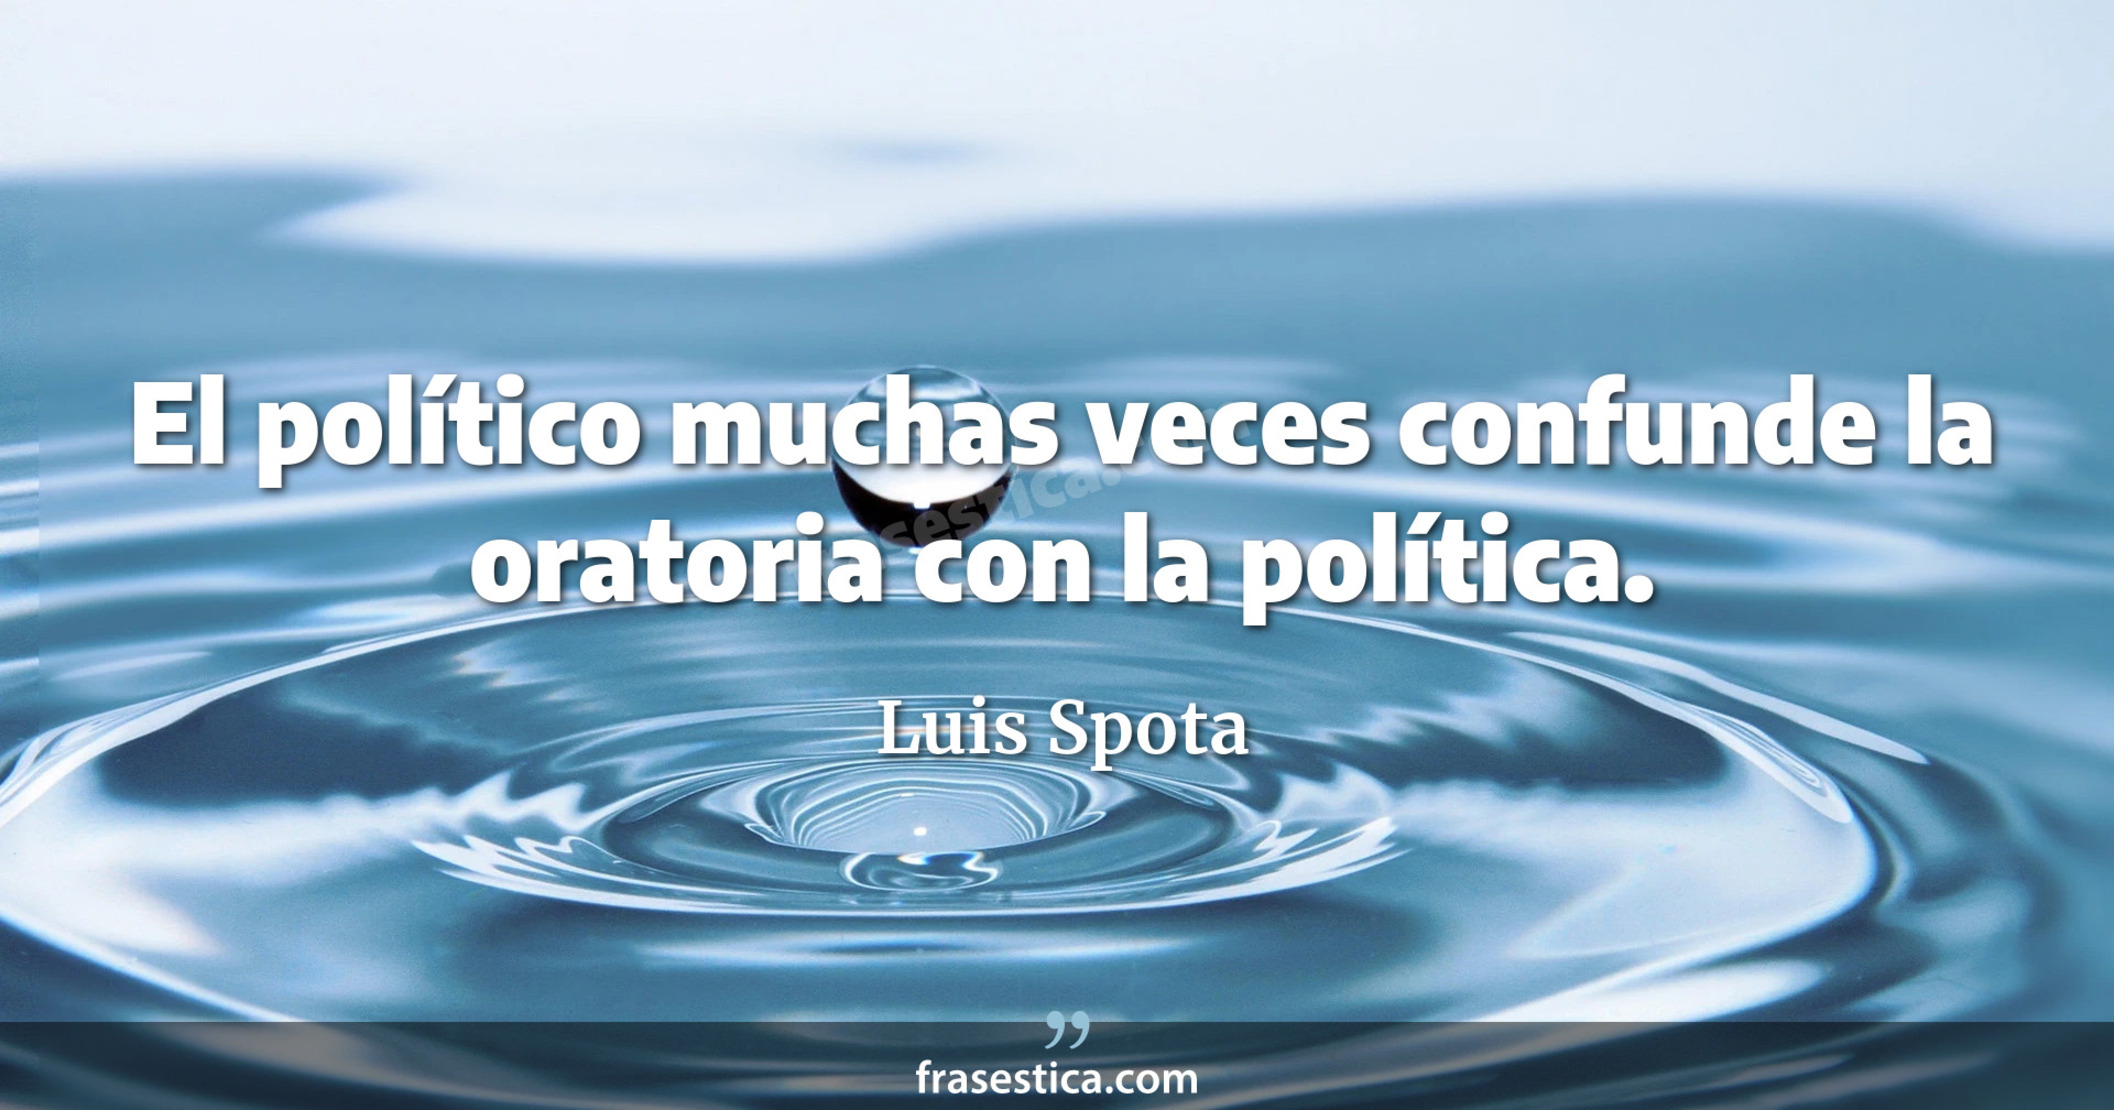 El político muchas veces confunde la oratoria con la política. - Luis Spota